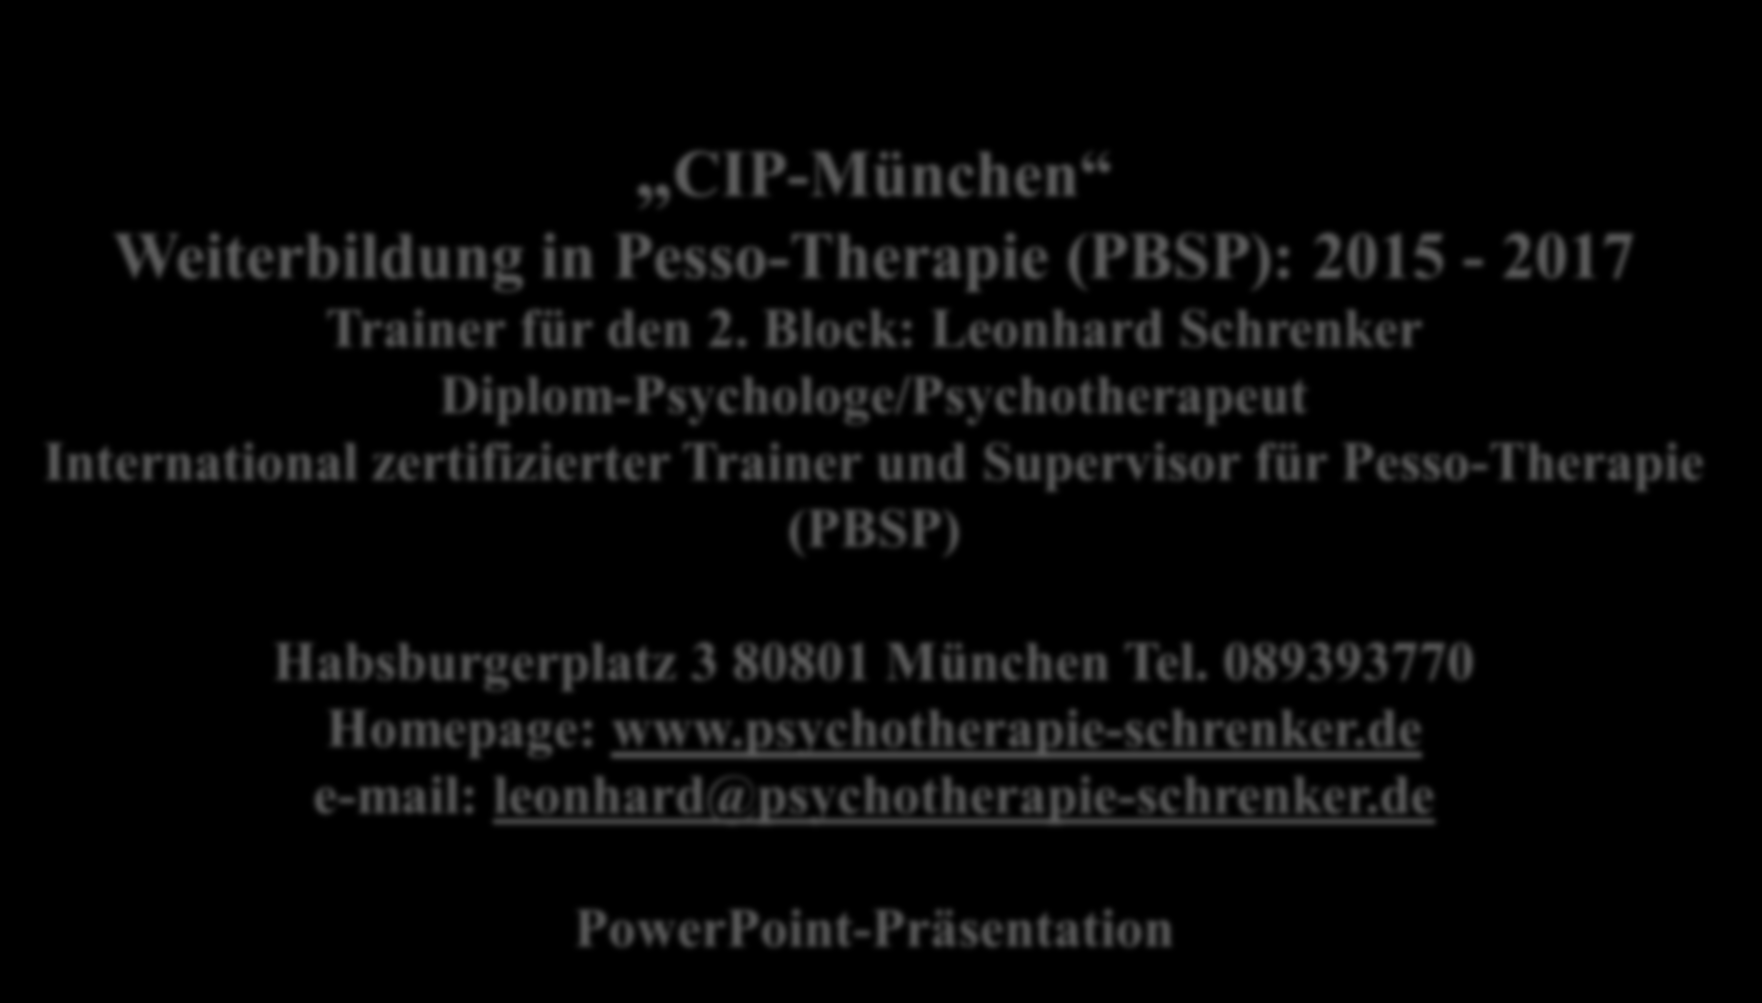 Leonhard Schrenker 2016 CIP-München Weiterbildung in Pesso-Therapie (PBSP): 2015-2017 Trainer für den 2.